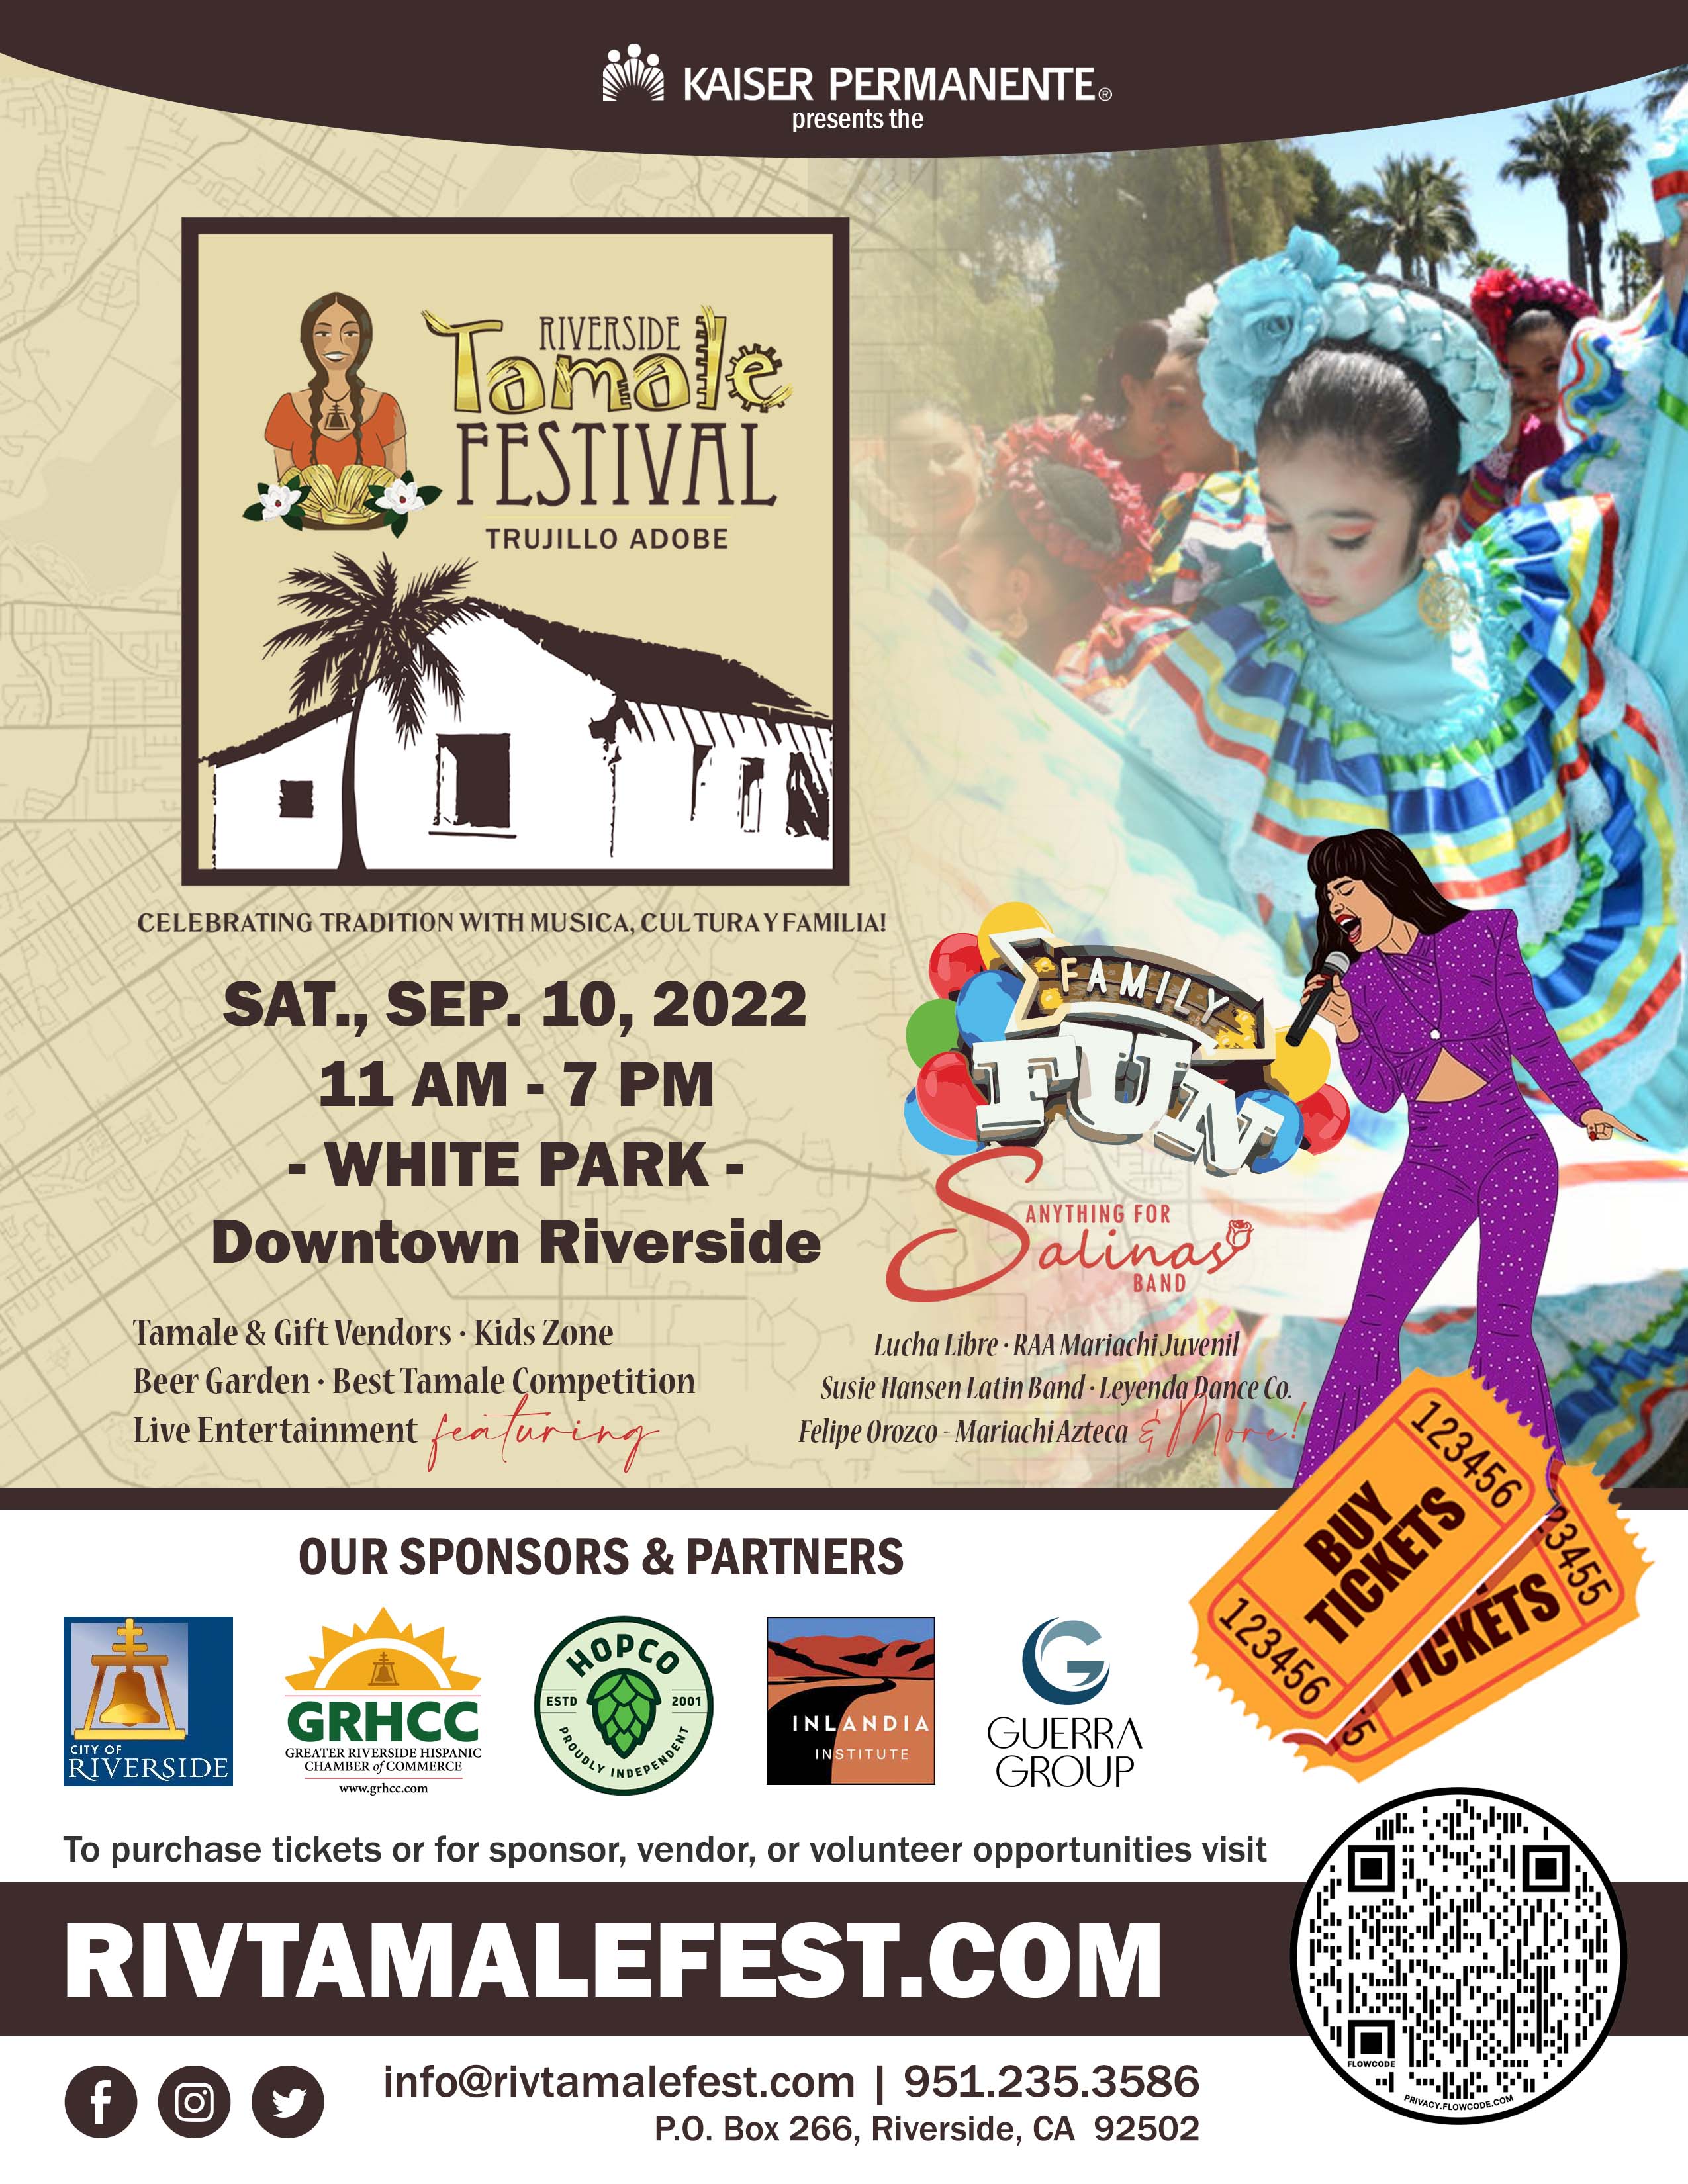 Riverside Tamale Festival riversideca.gov